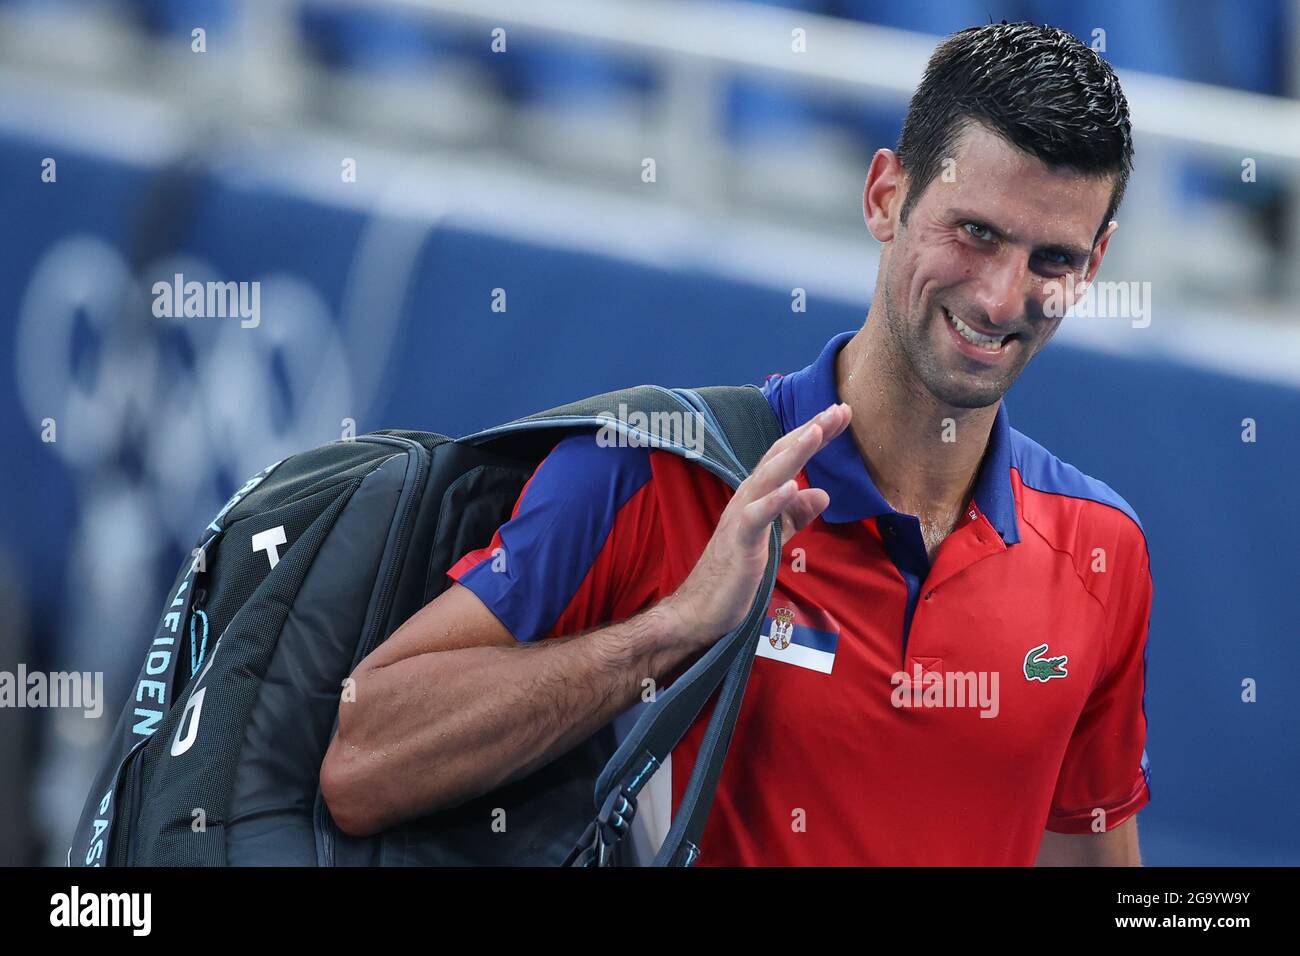 (210728) -- TOKIO, 28. Juli 2021 (Xinhua) -- Novak Djokovic aus Serbien feiert nach dem Tennisseinzel-Spiel der dritten Runde gegen Alejandro Davidovich Fokina aus Spanien bei den Olympischen Spielen 2020 in Tokio, Japan, 28. Juli 2021. Stockfoto